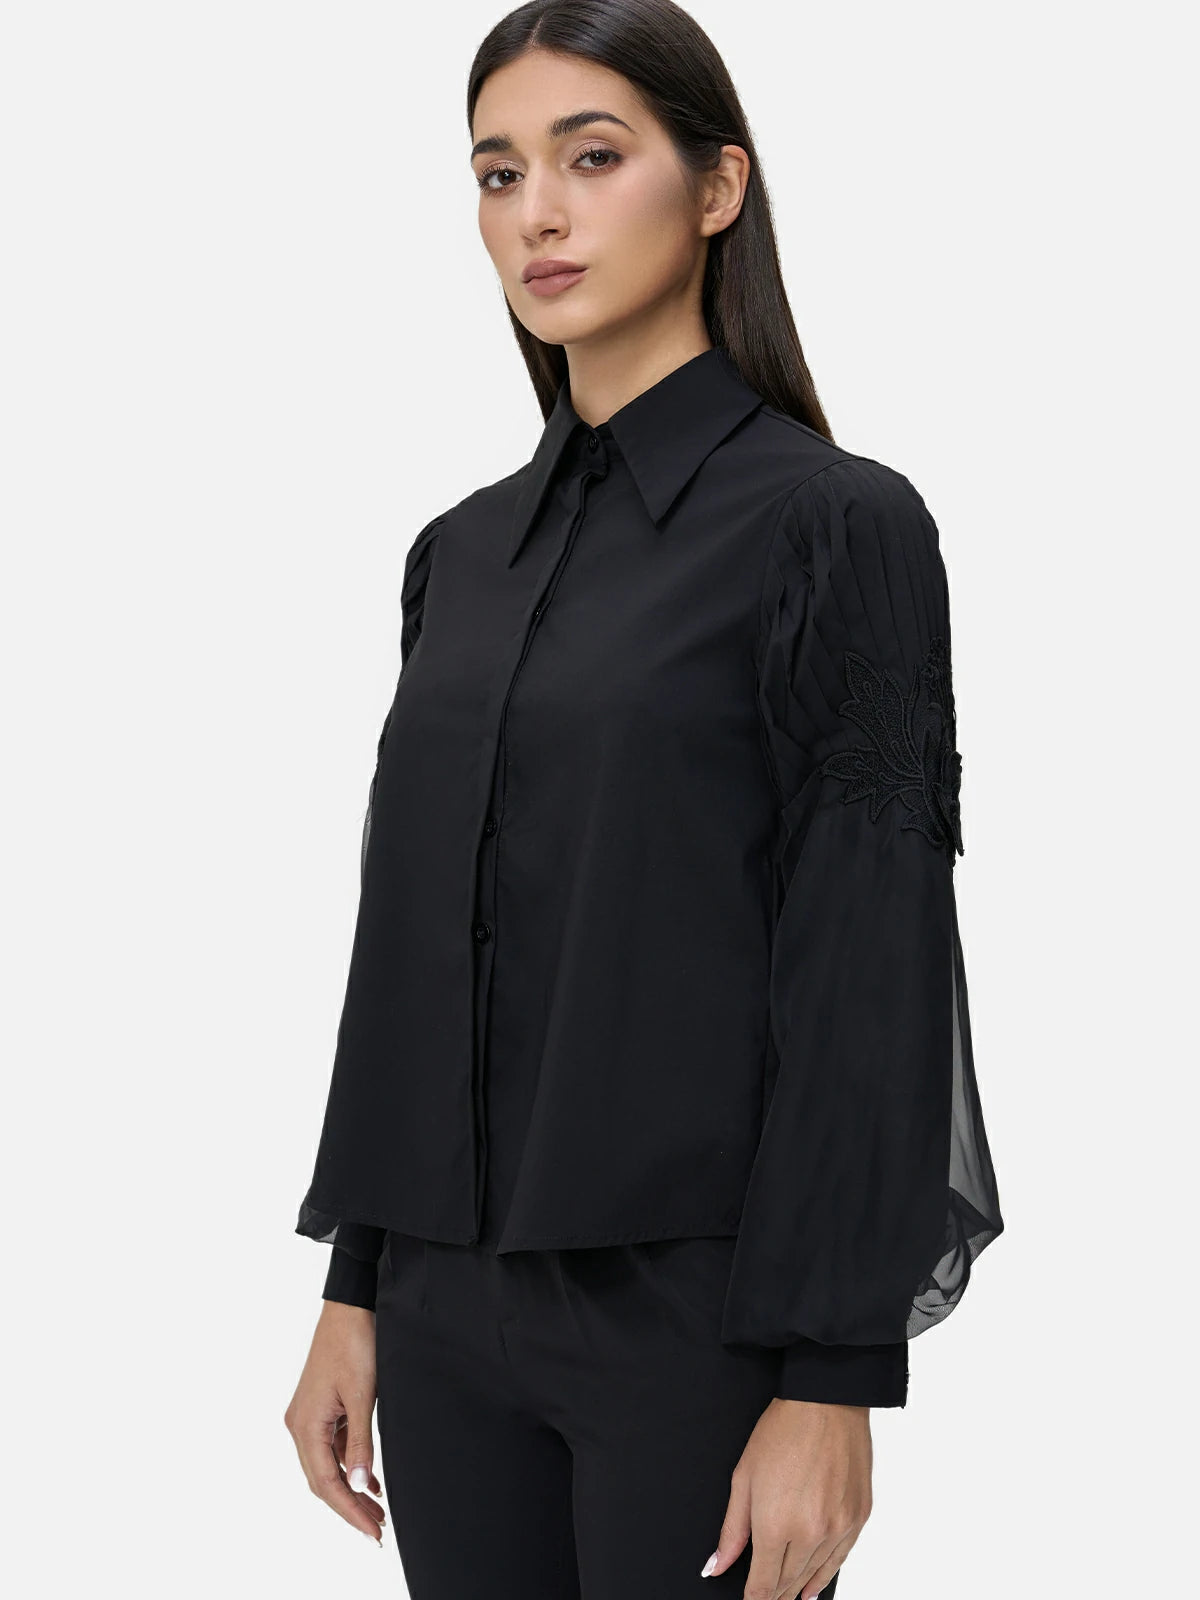 Unique design featuring elegant pleated sleeves